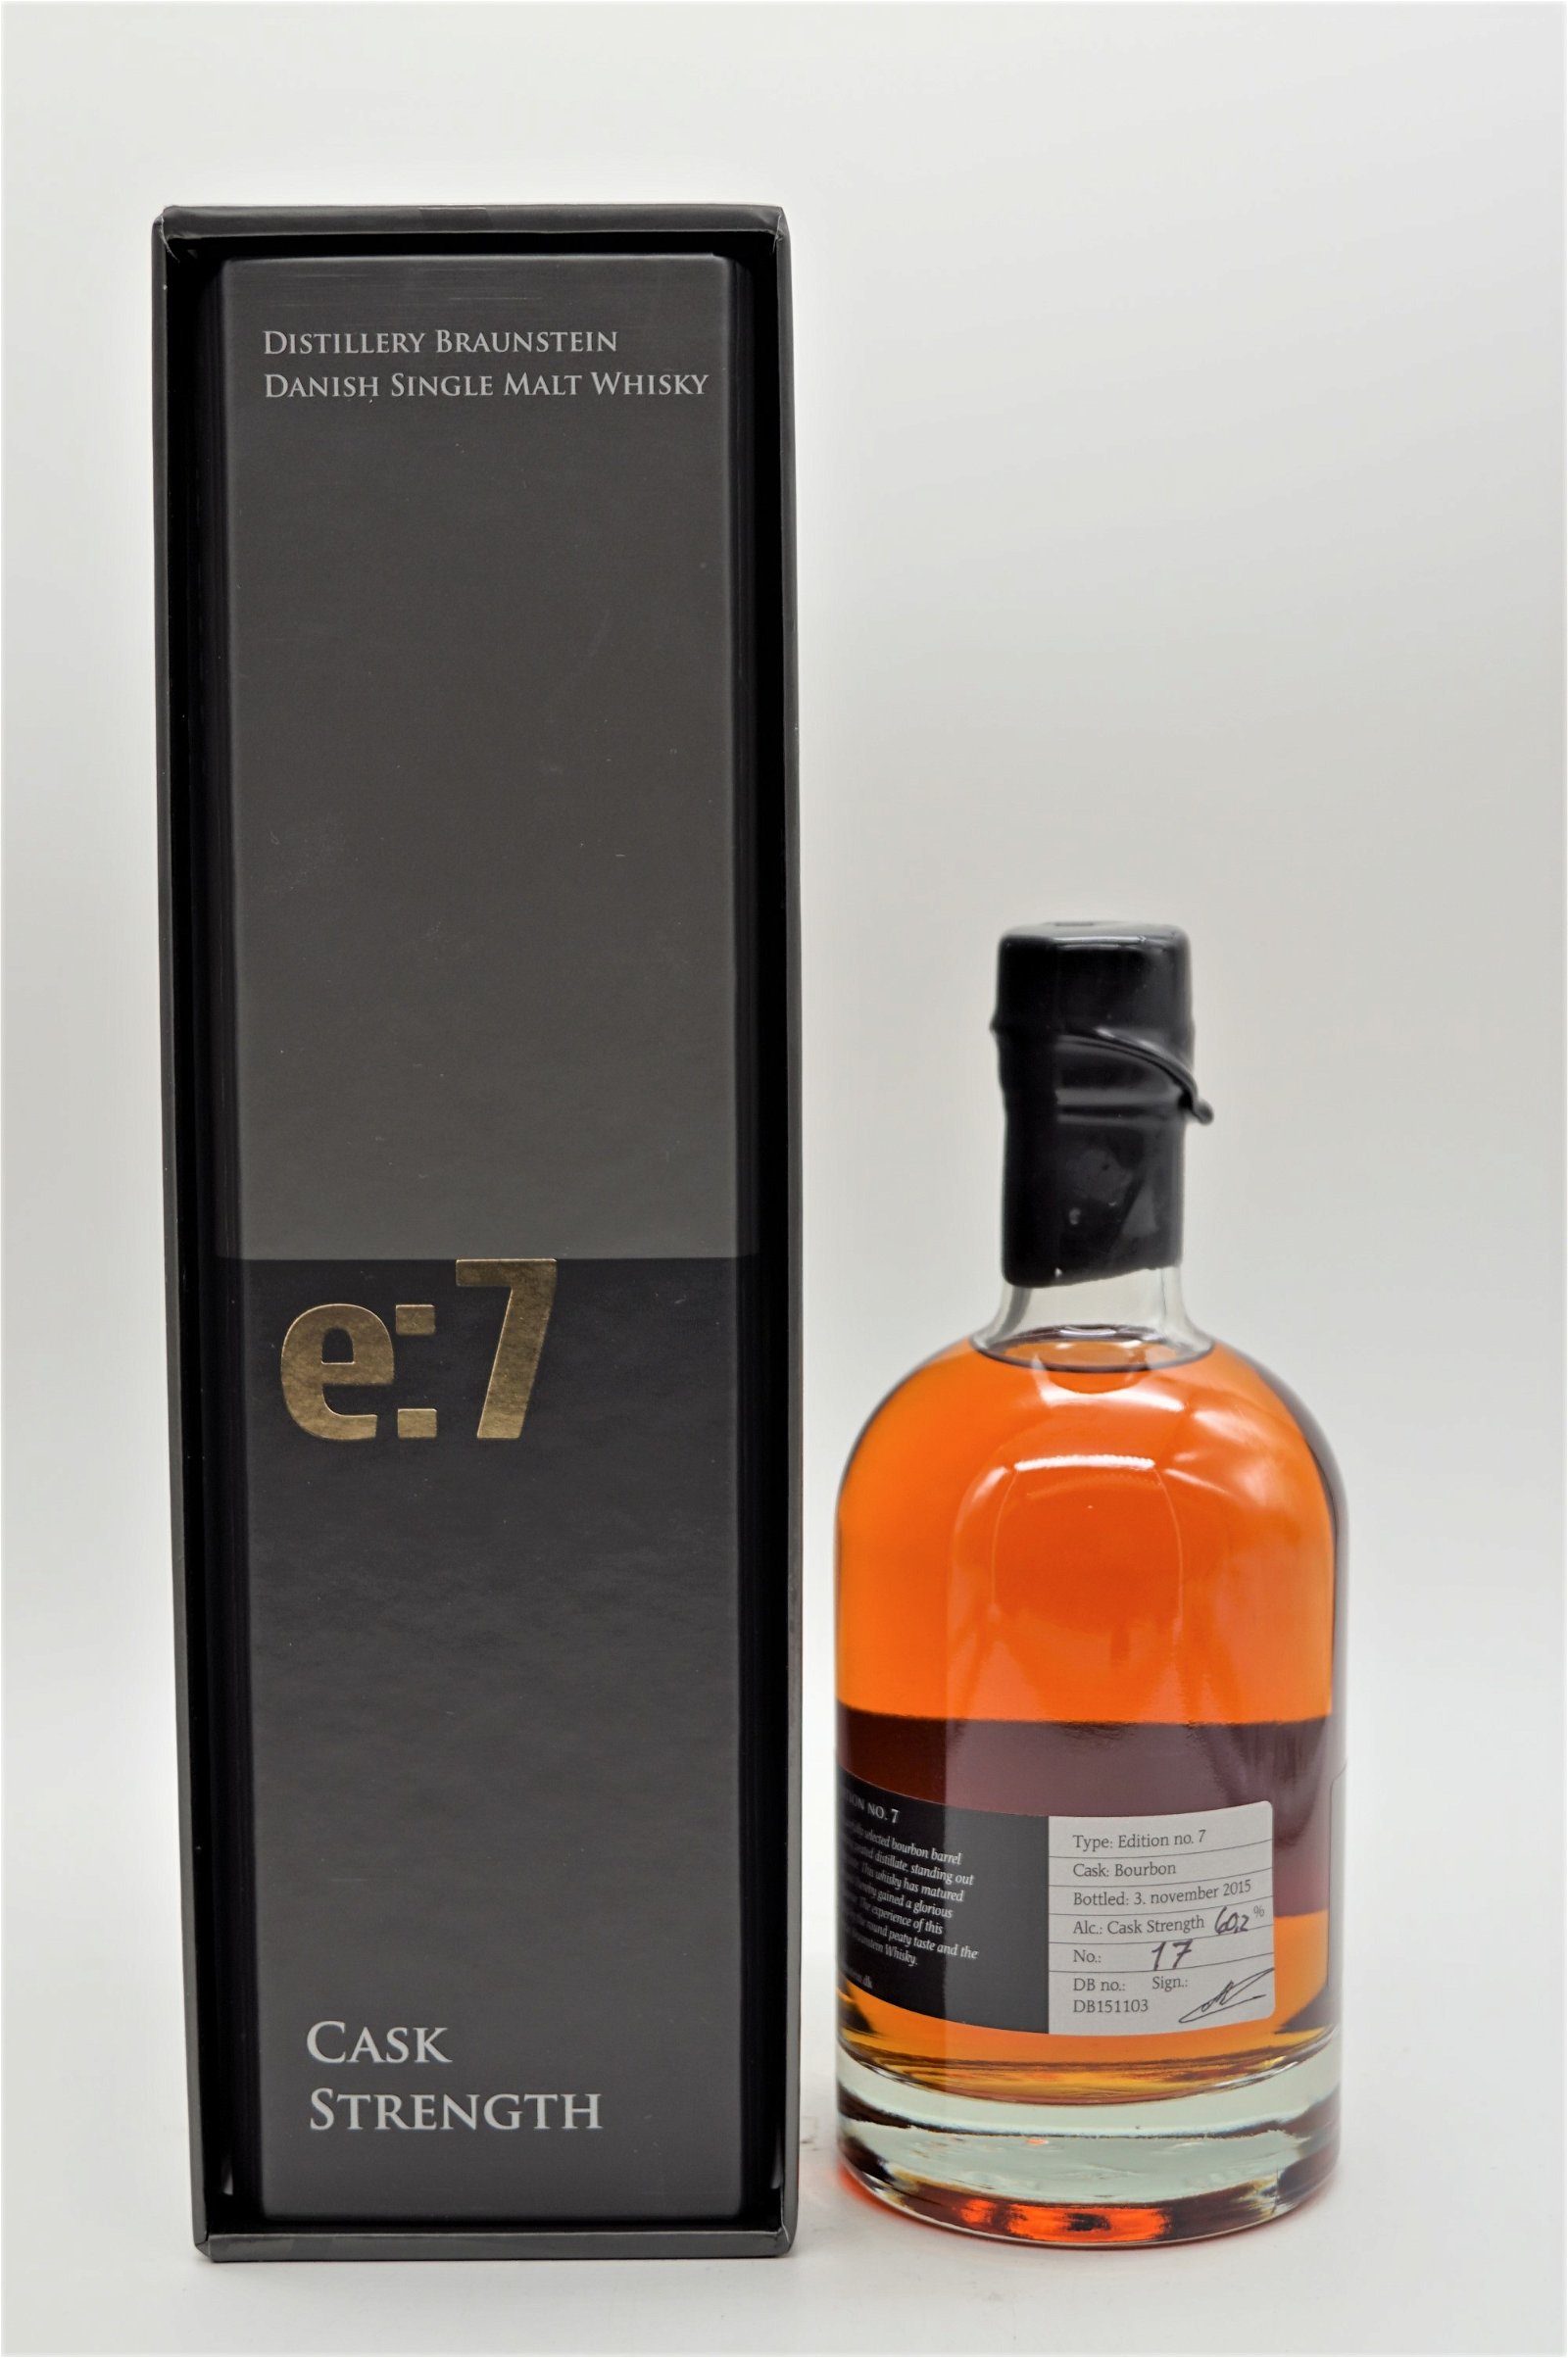 Braunstein Cask Strength Edition E7 Dansk Single Malt Whisky